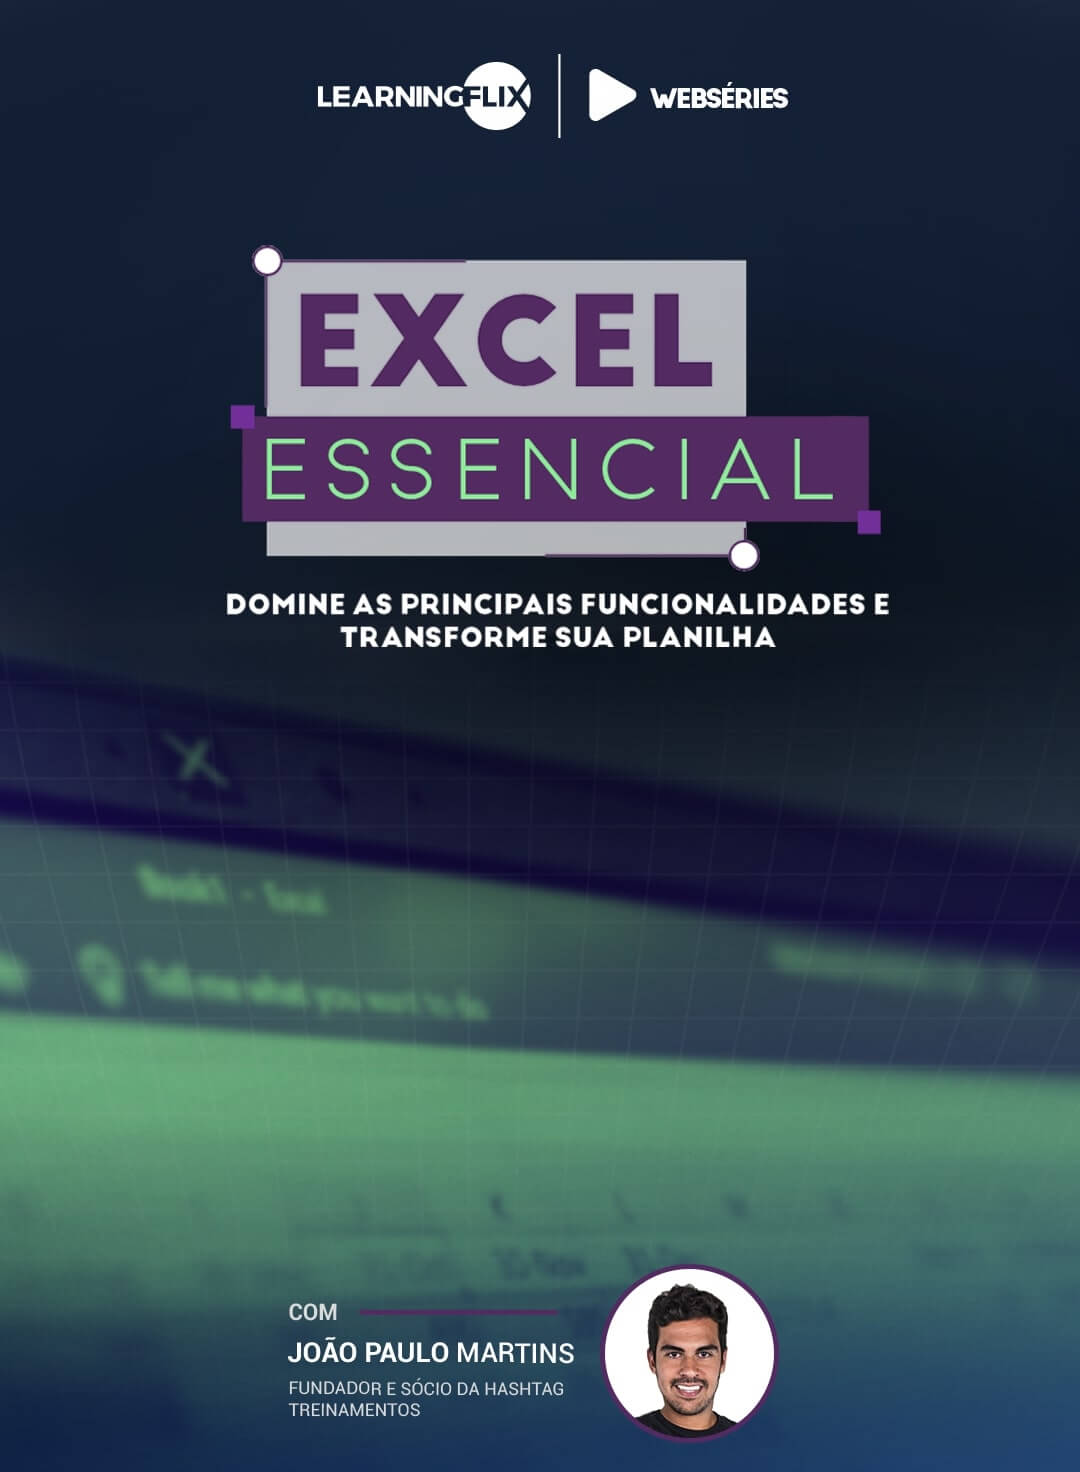 capa da websérie Excel essencial com João Paulo Martins